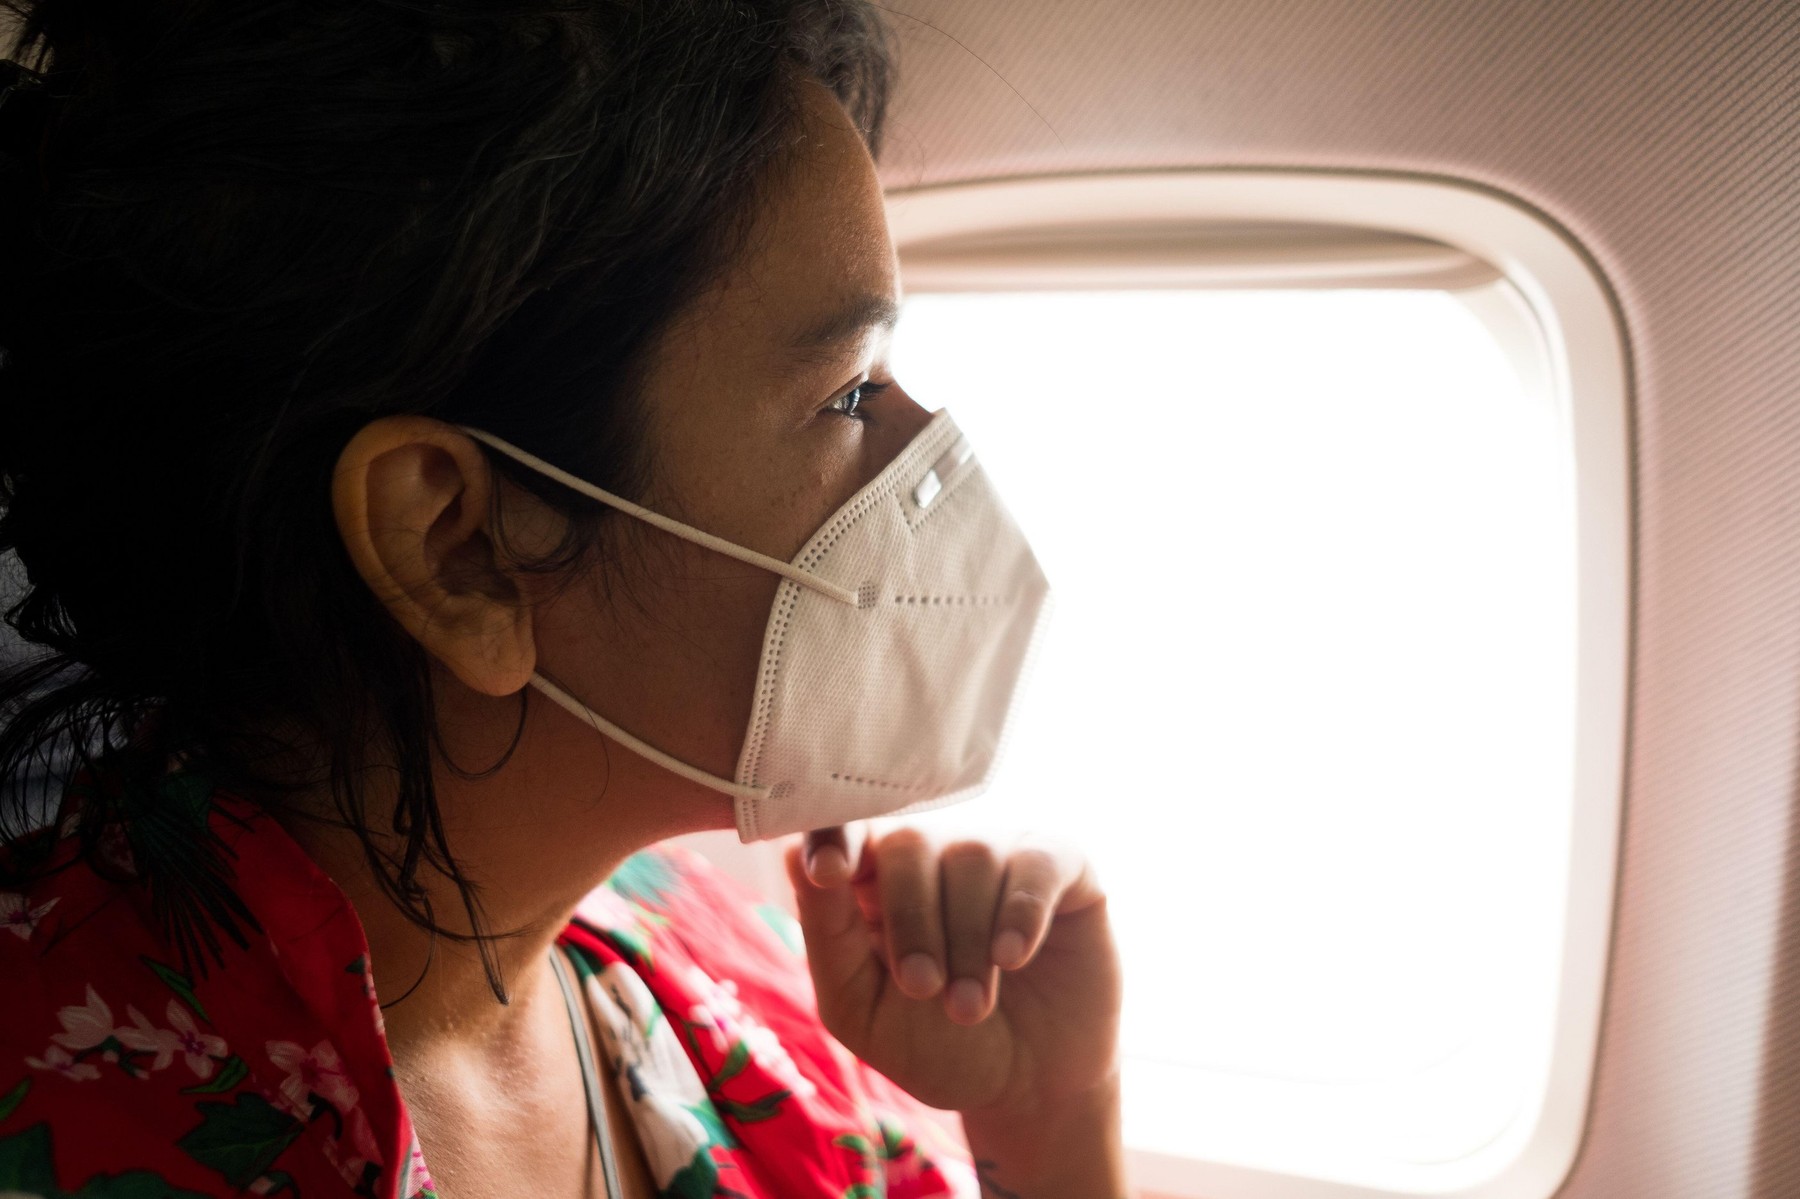 potovanje z letalom med epidemijo